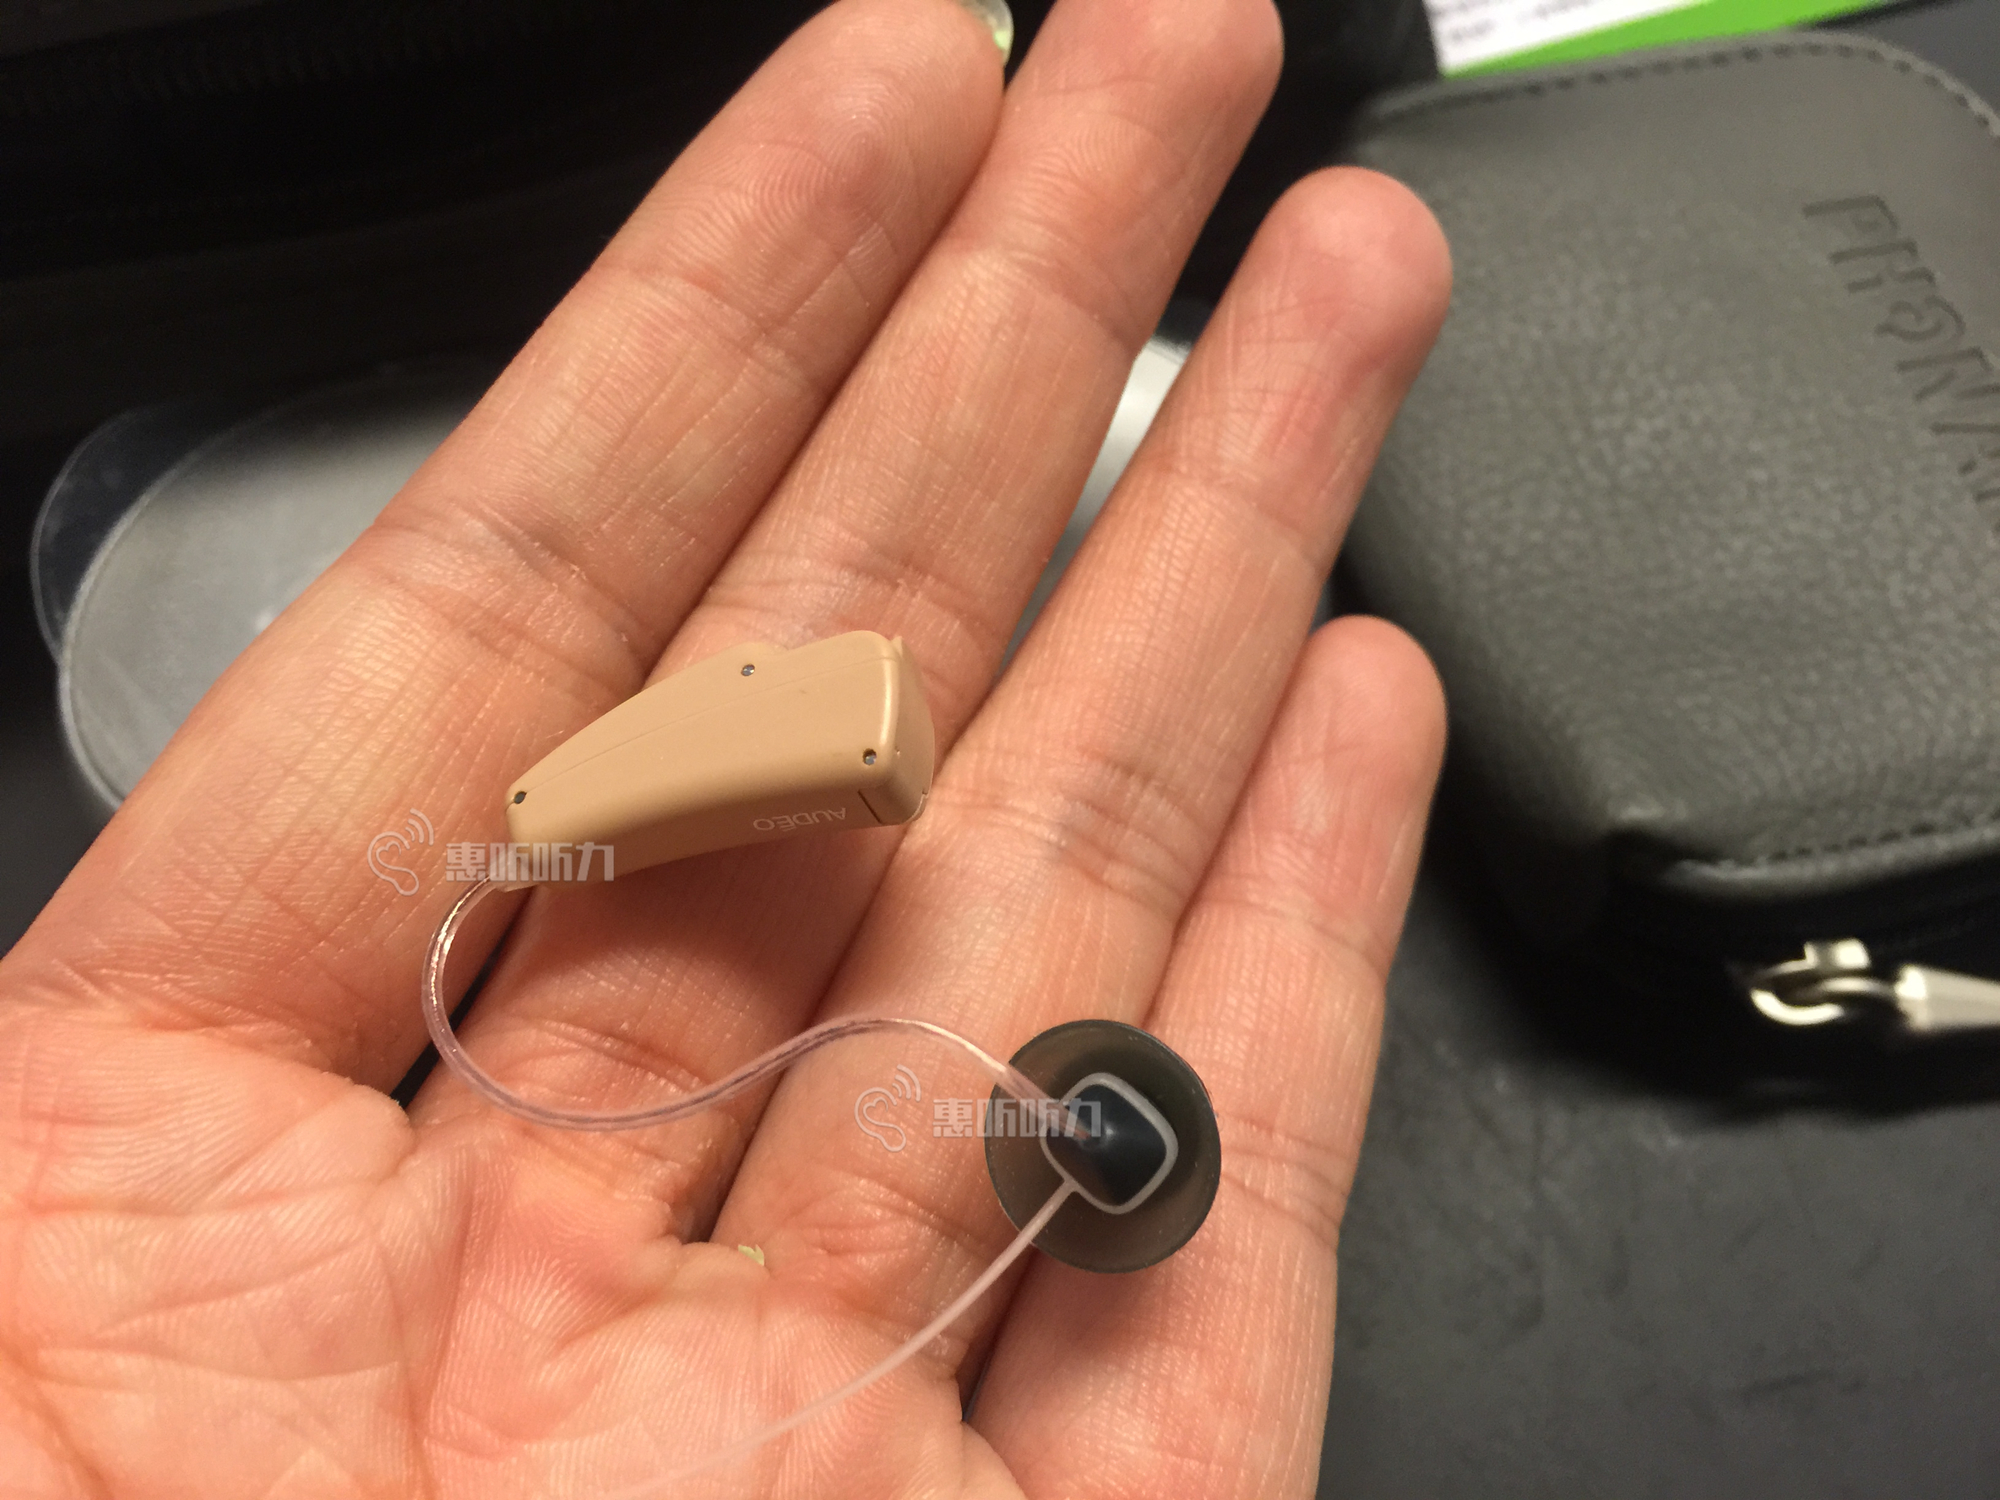 世界上最小的助听器图片